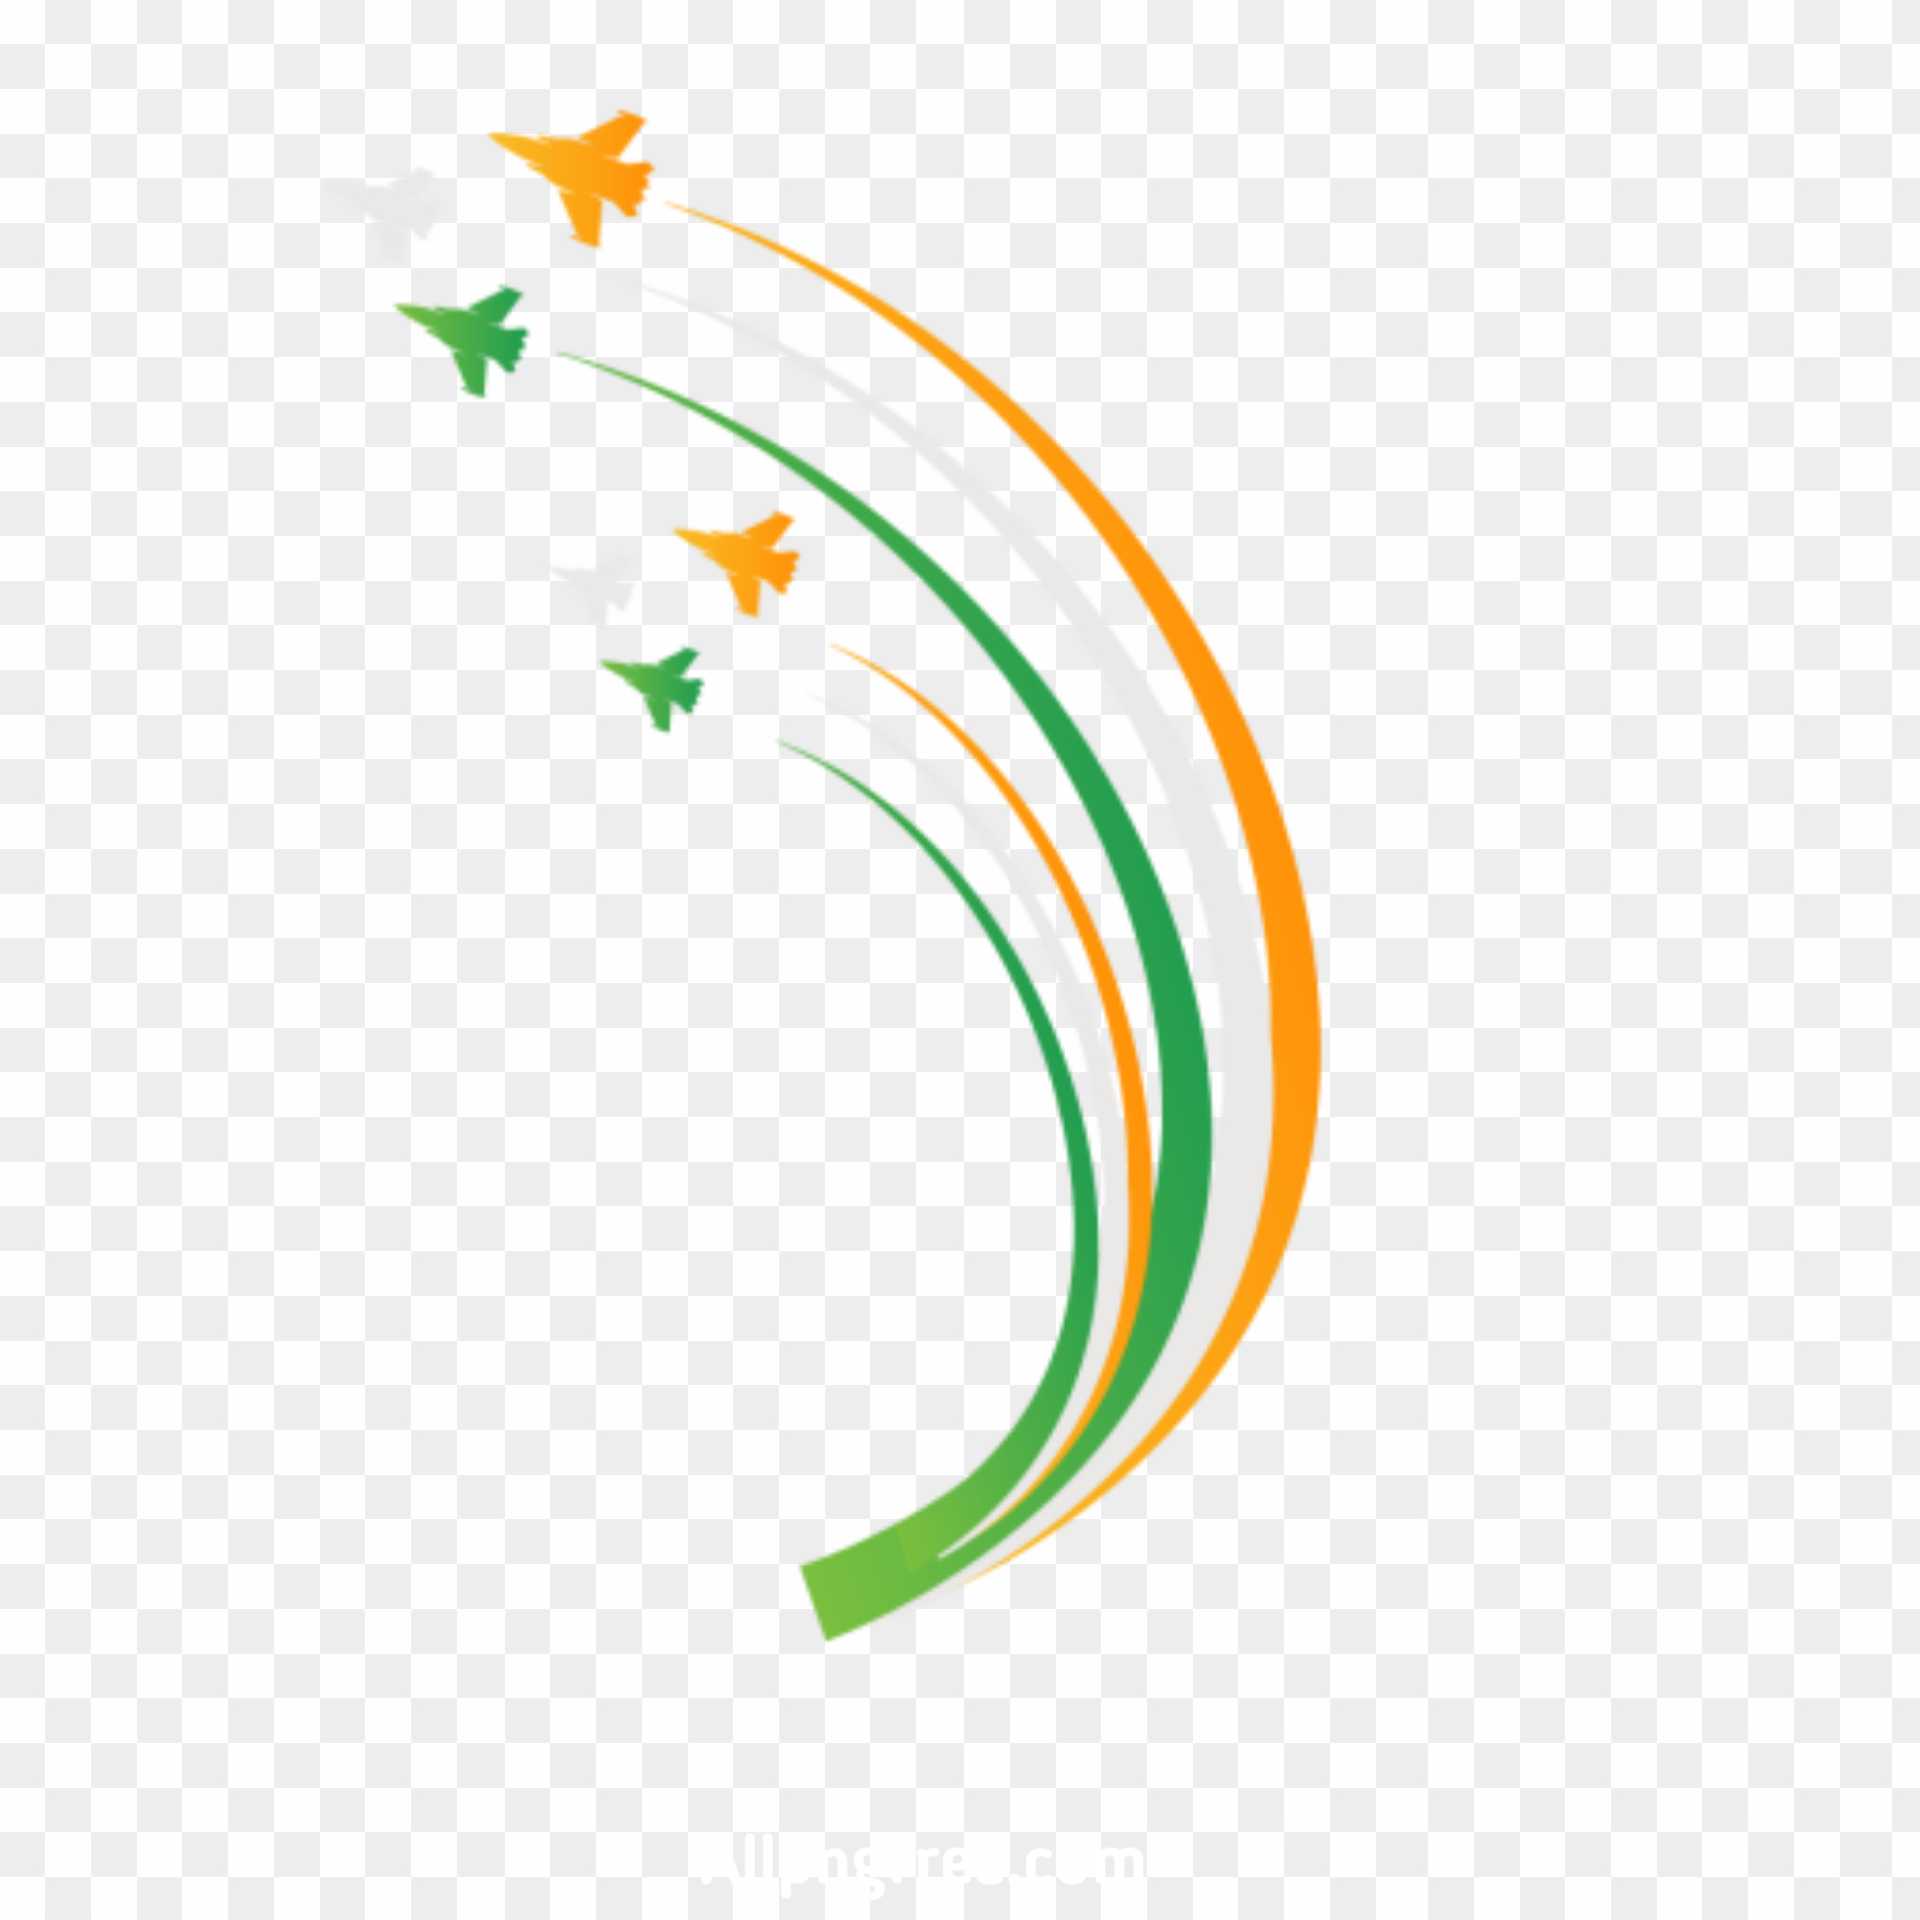 Indian flag tiranga PNG images